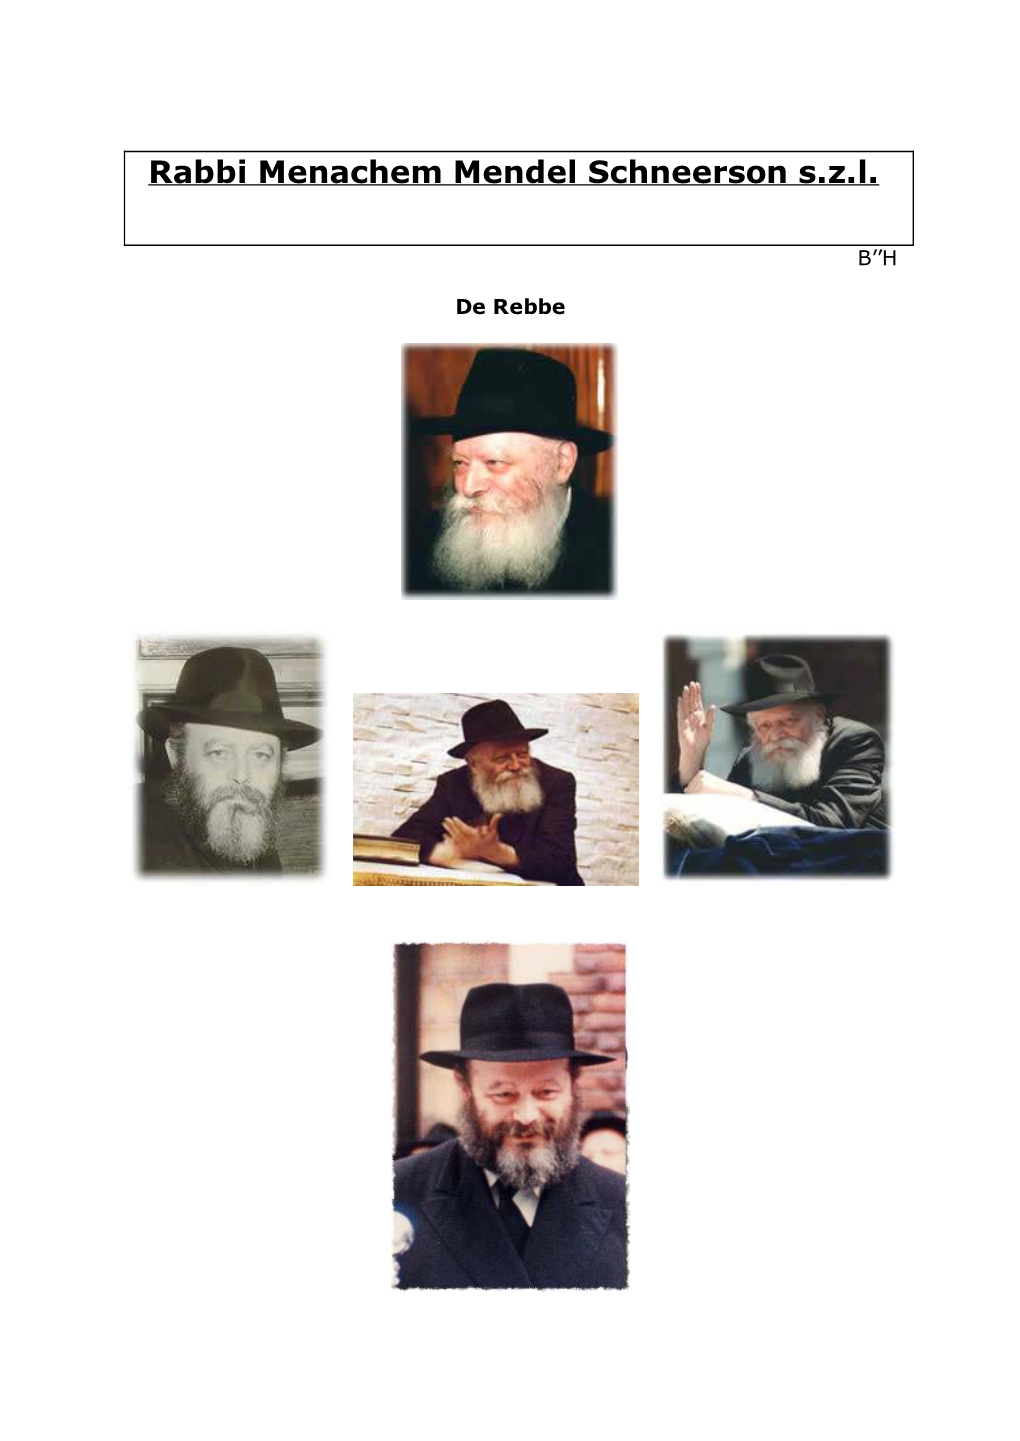 Rabbi Menachem Mendel Schneerson S.Z.L